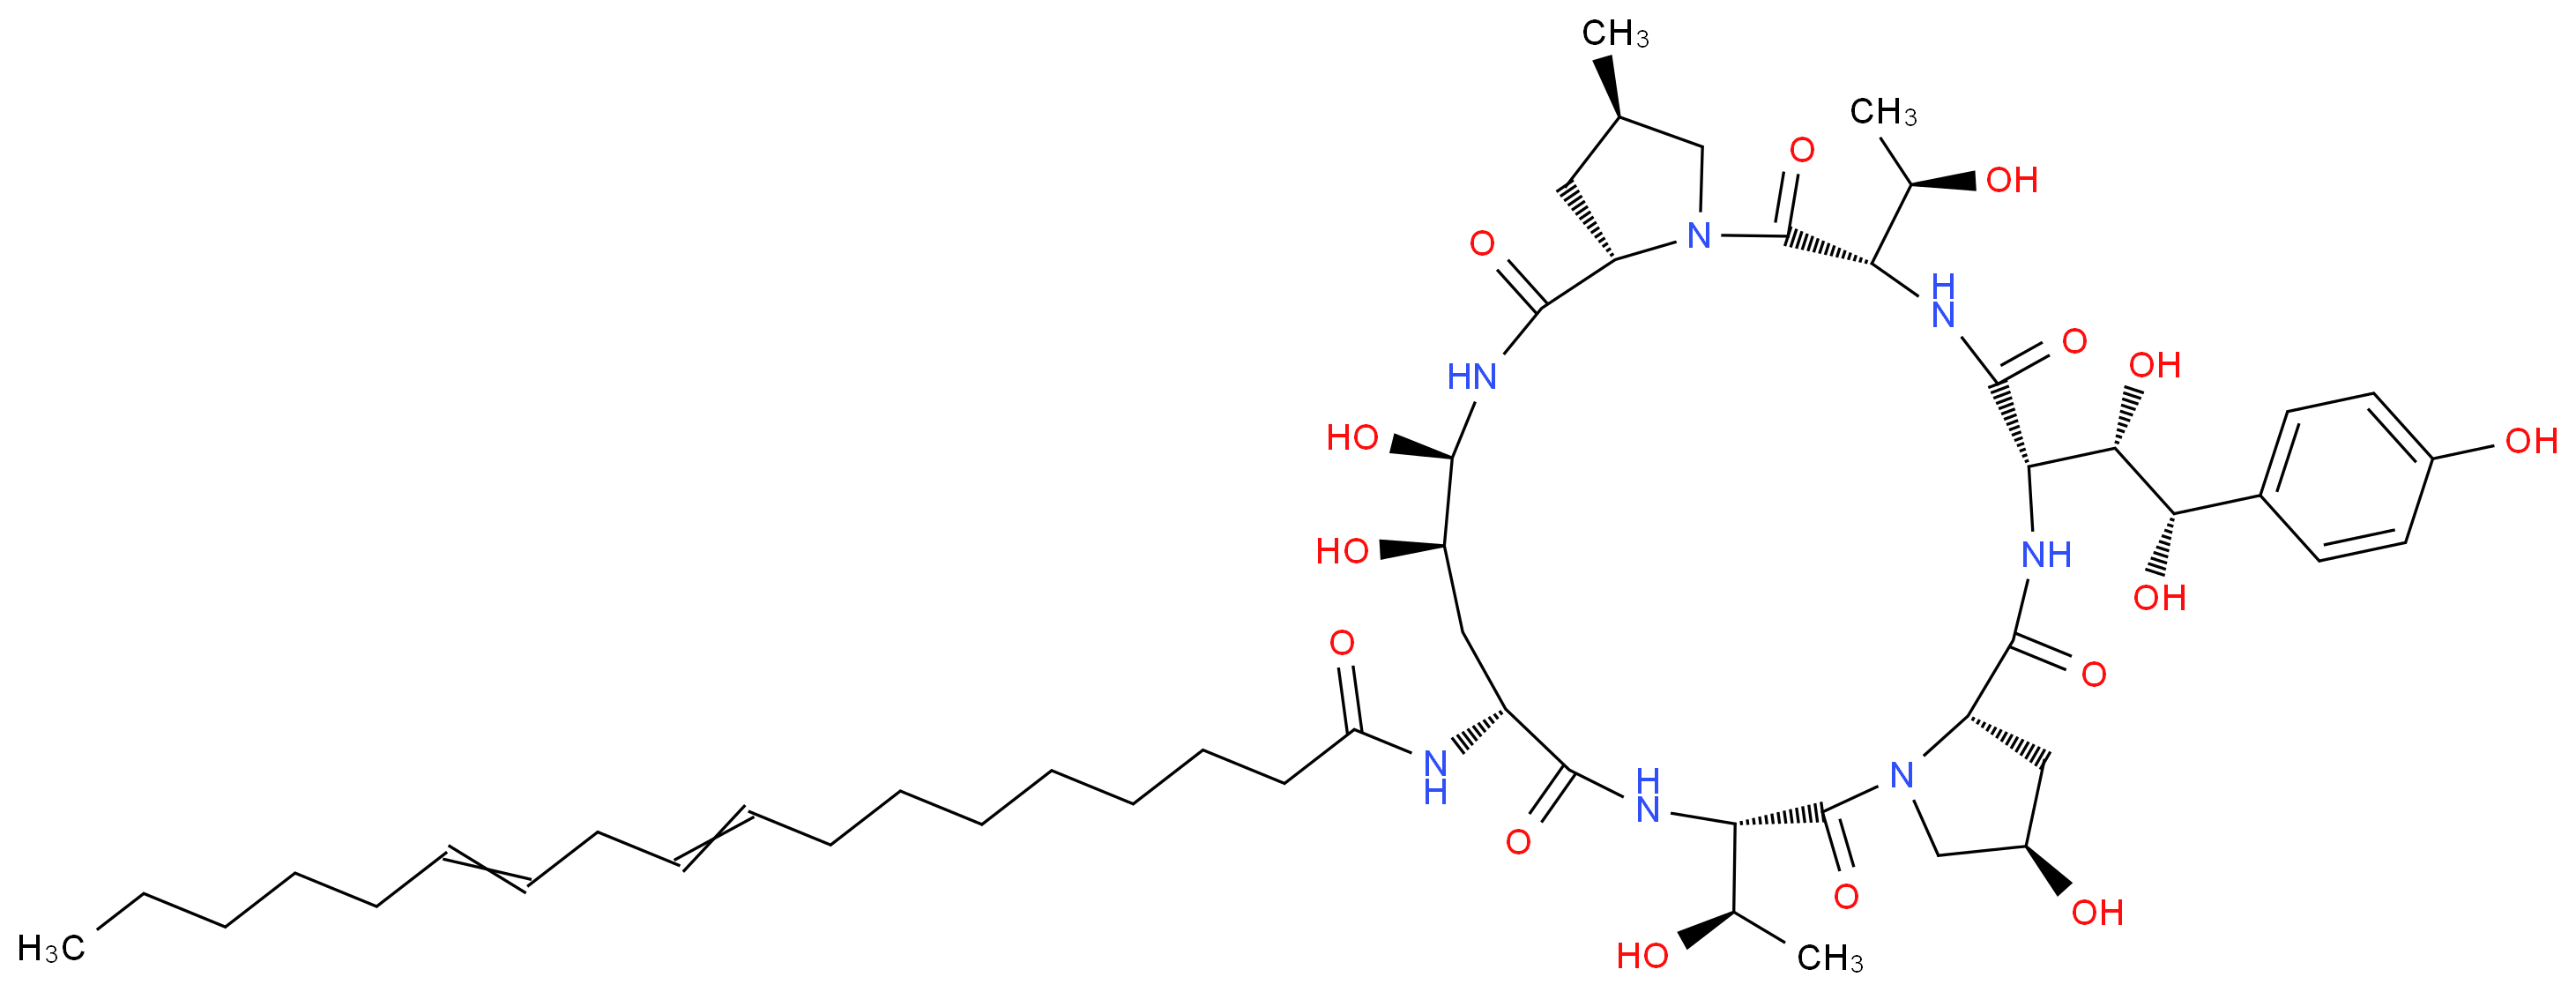 54651-05-7 molecular structure